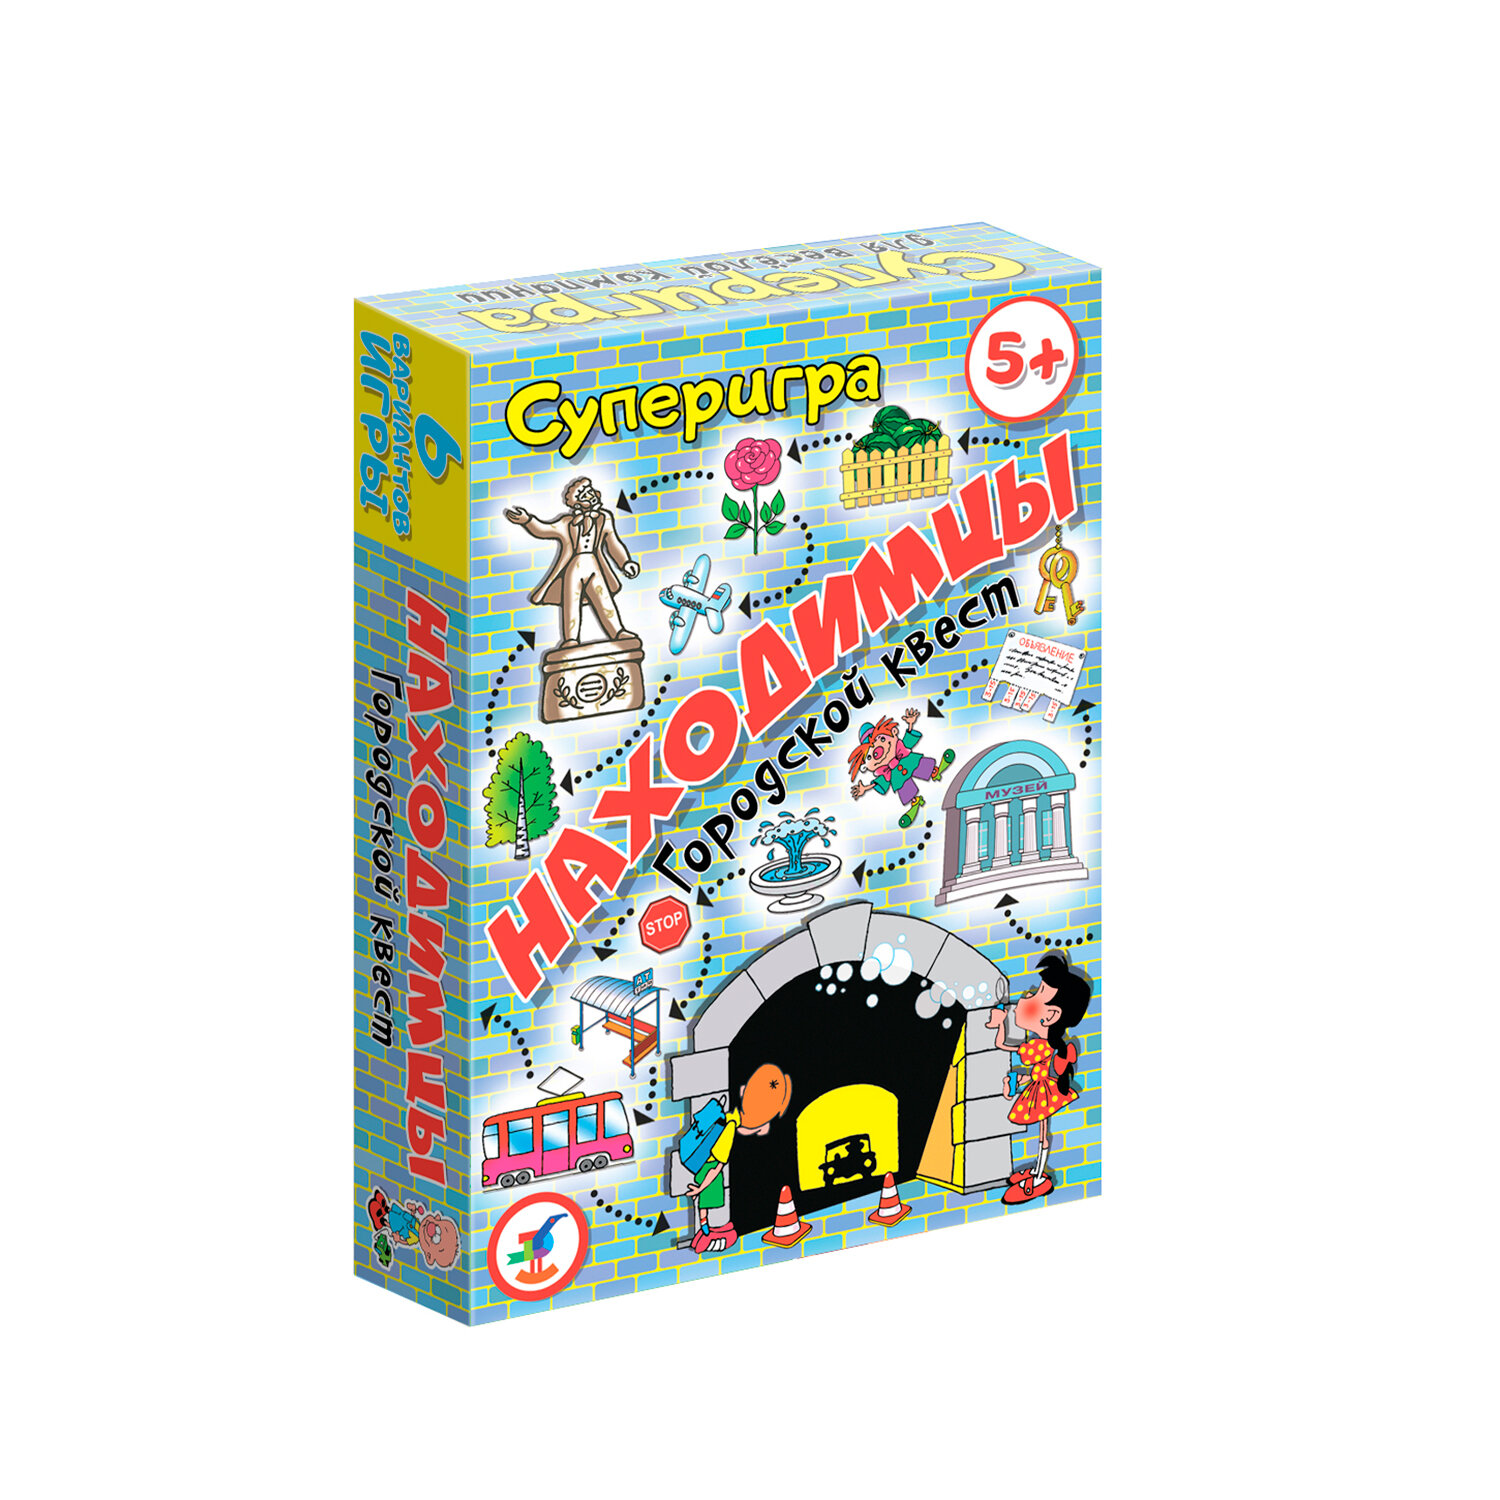 Игра - городской квест "Находимцы" для детей от 5 лет